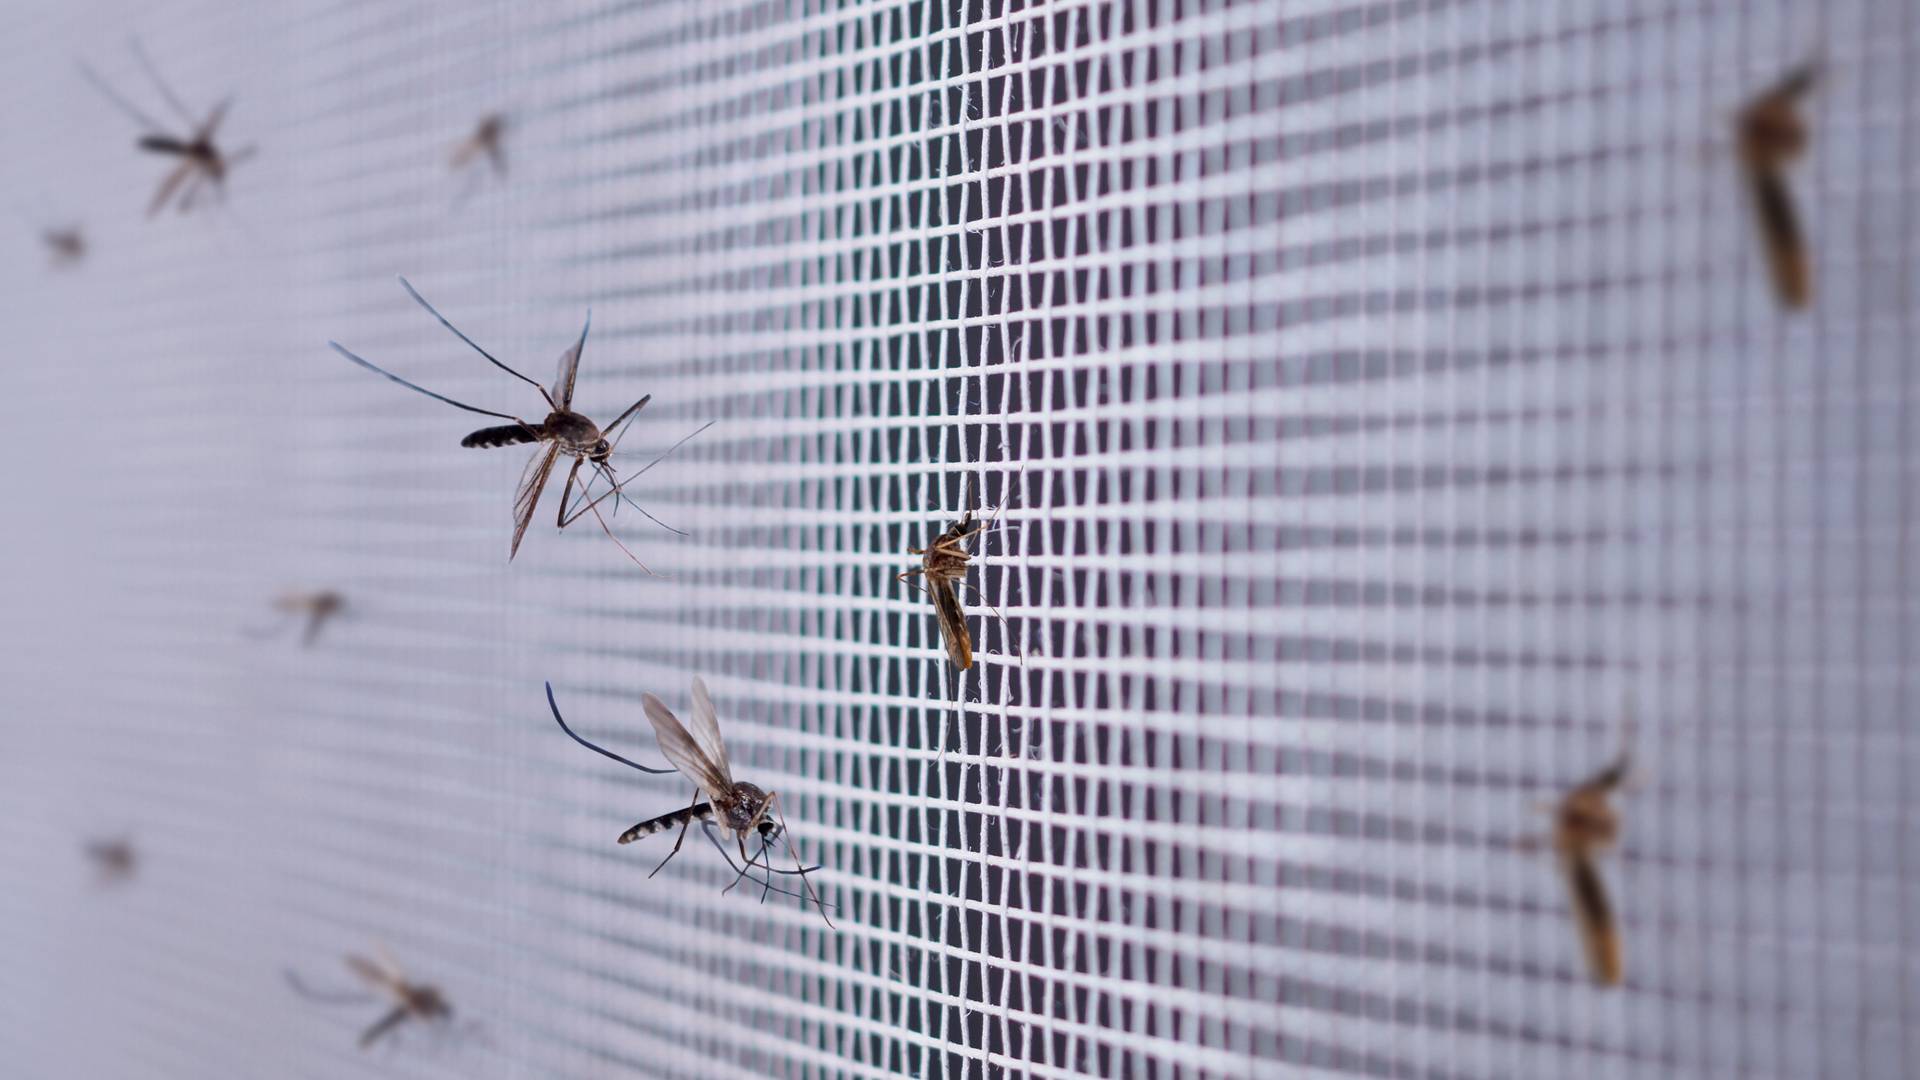 Moskitiera okienna — skuteczny sposób na walkę z insektami w domu